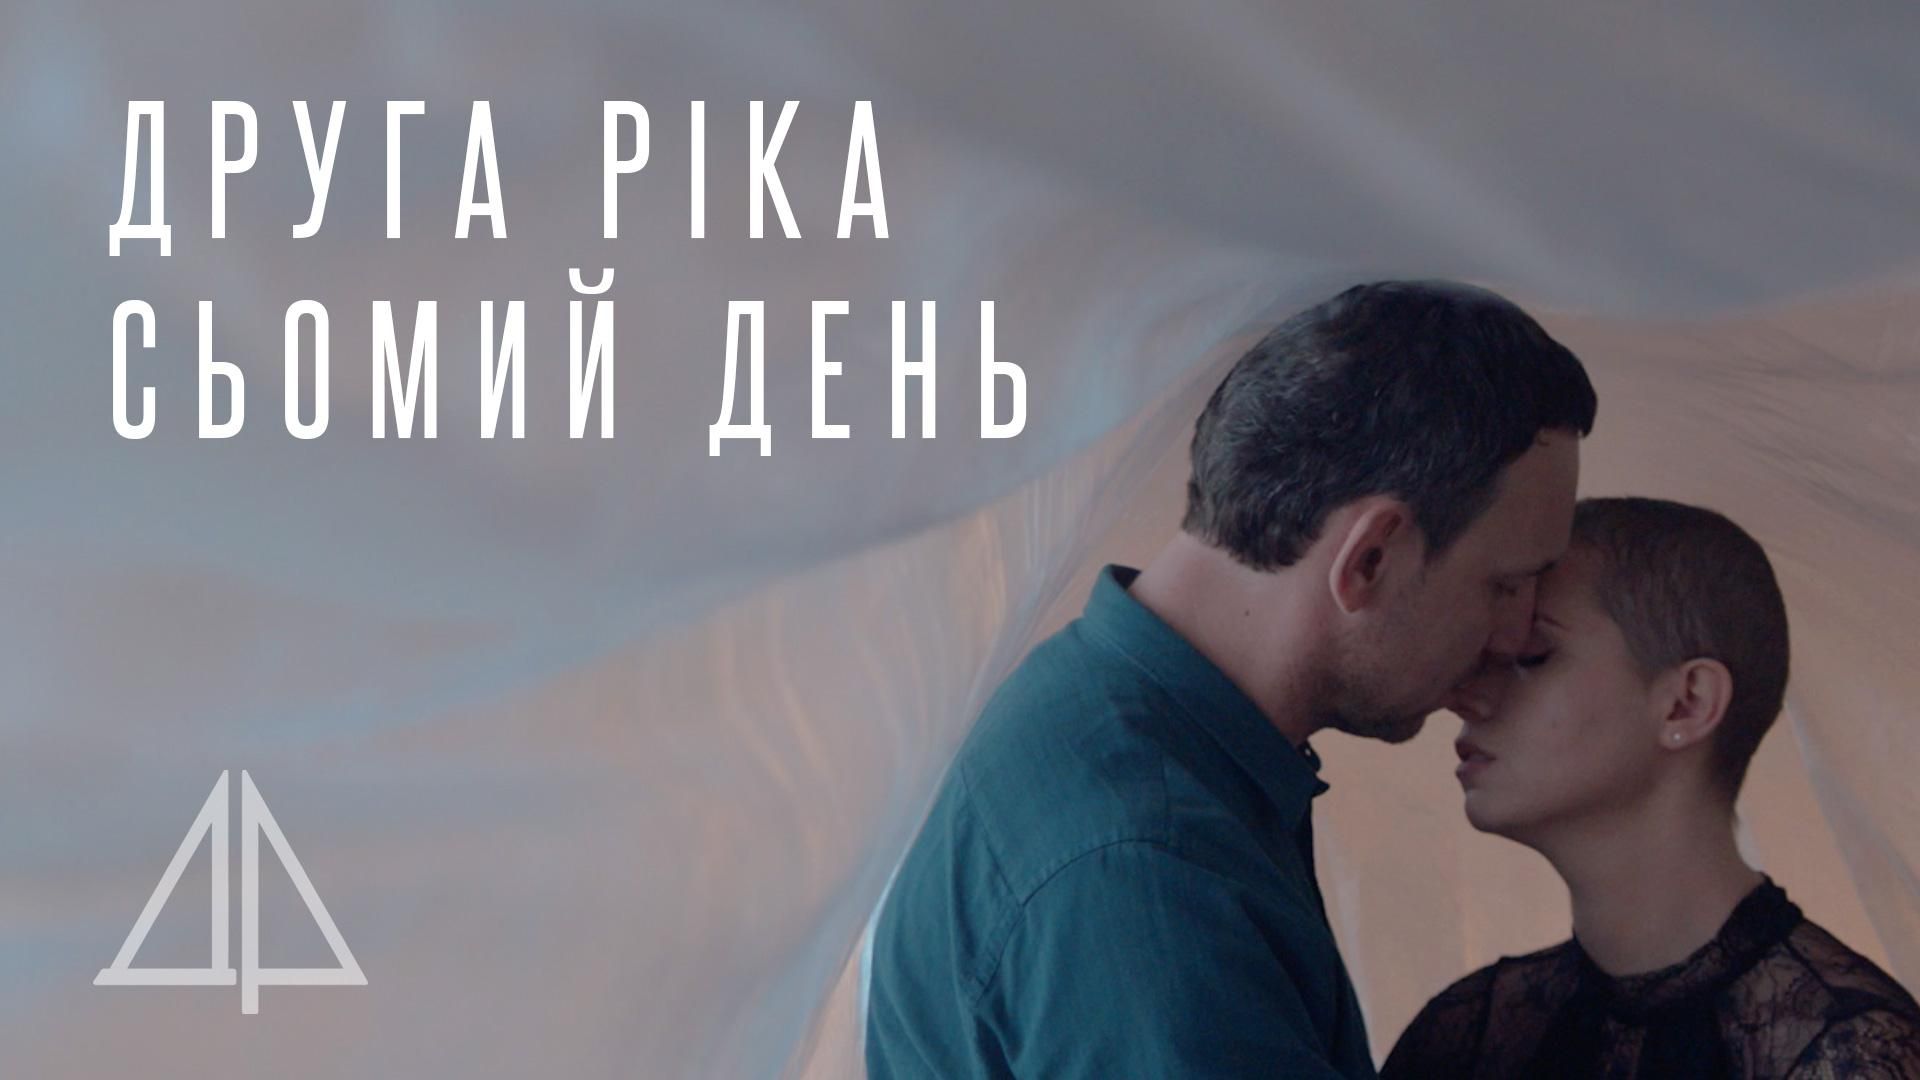 Янина Соколова и "Друга Ріка" представили клип "Сьомий день", посвященный онкобольным людям